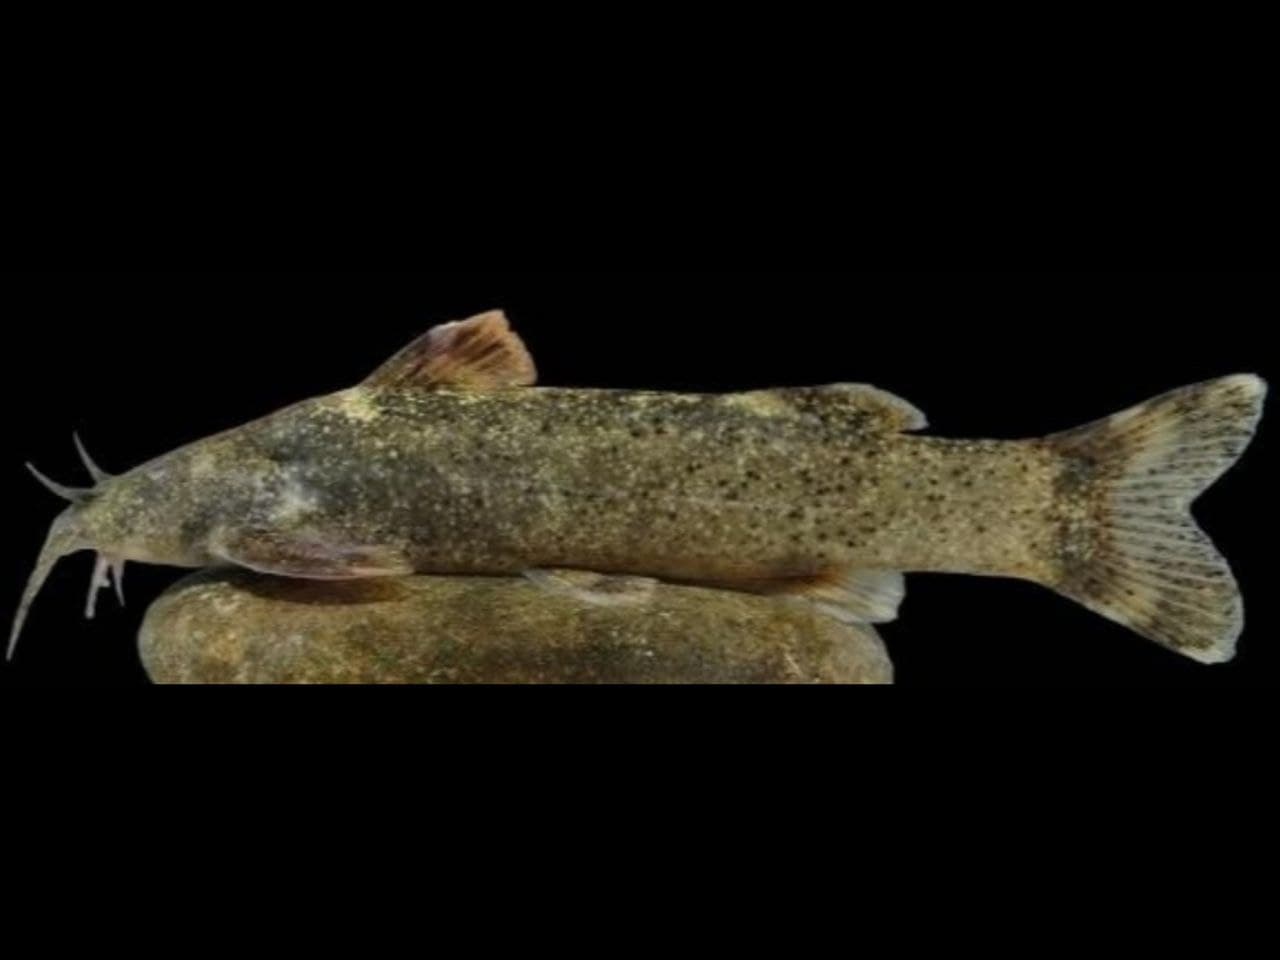 کشف و ثبت جهانی گونه جدید ماهی و نامگذاری آن به نام “علی دایی”